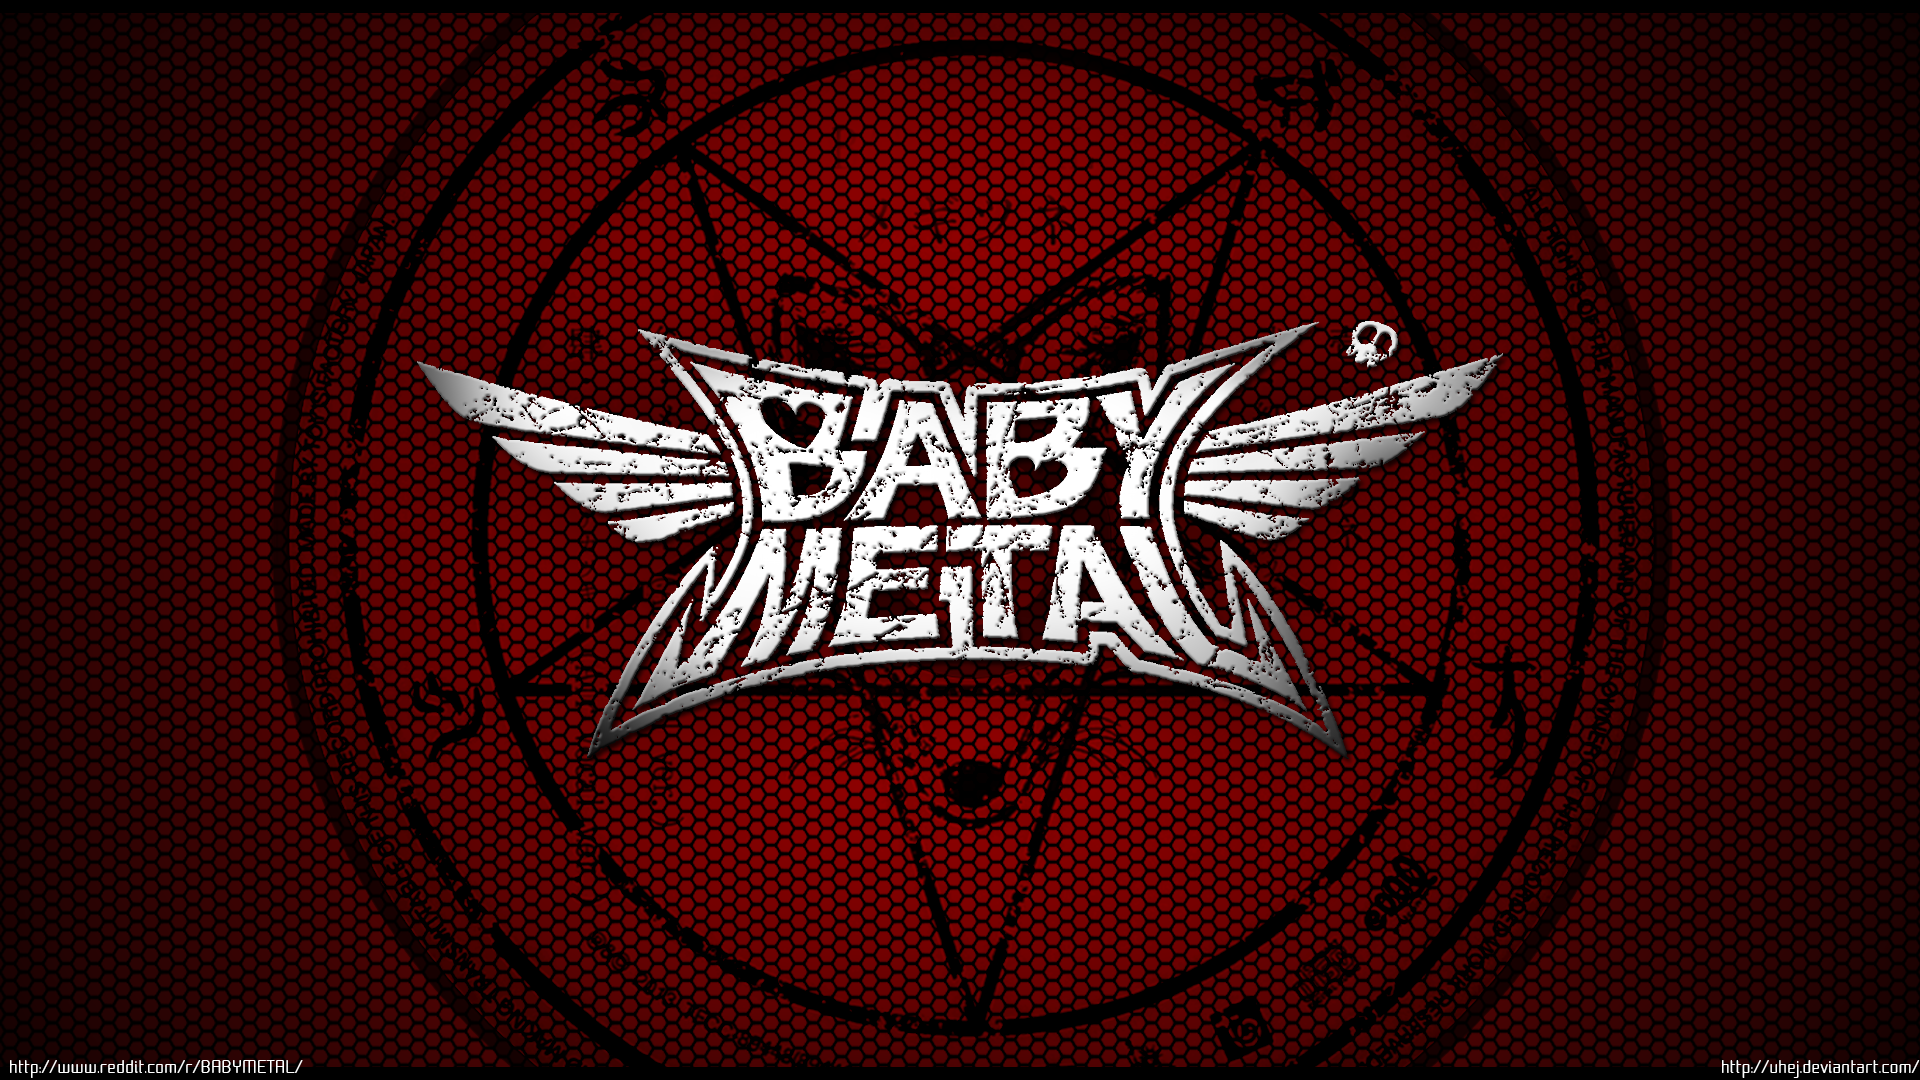 Babymetal Logos